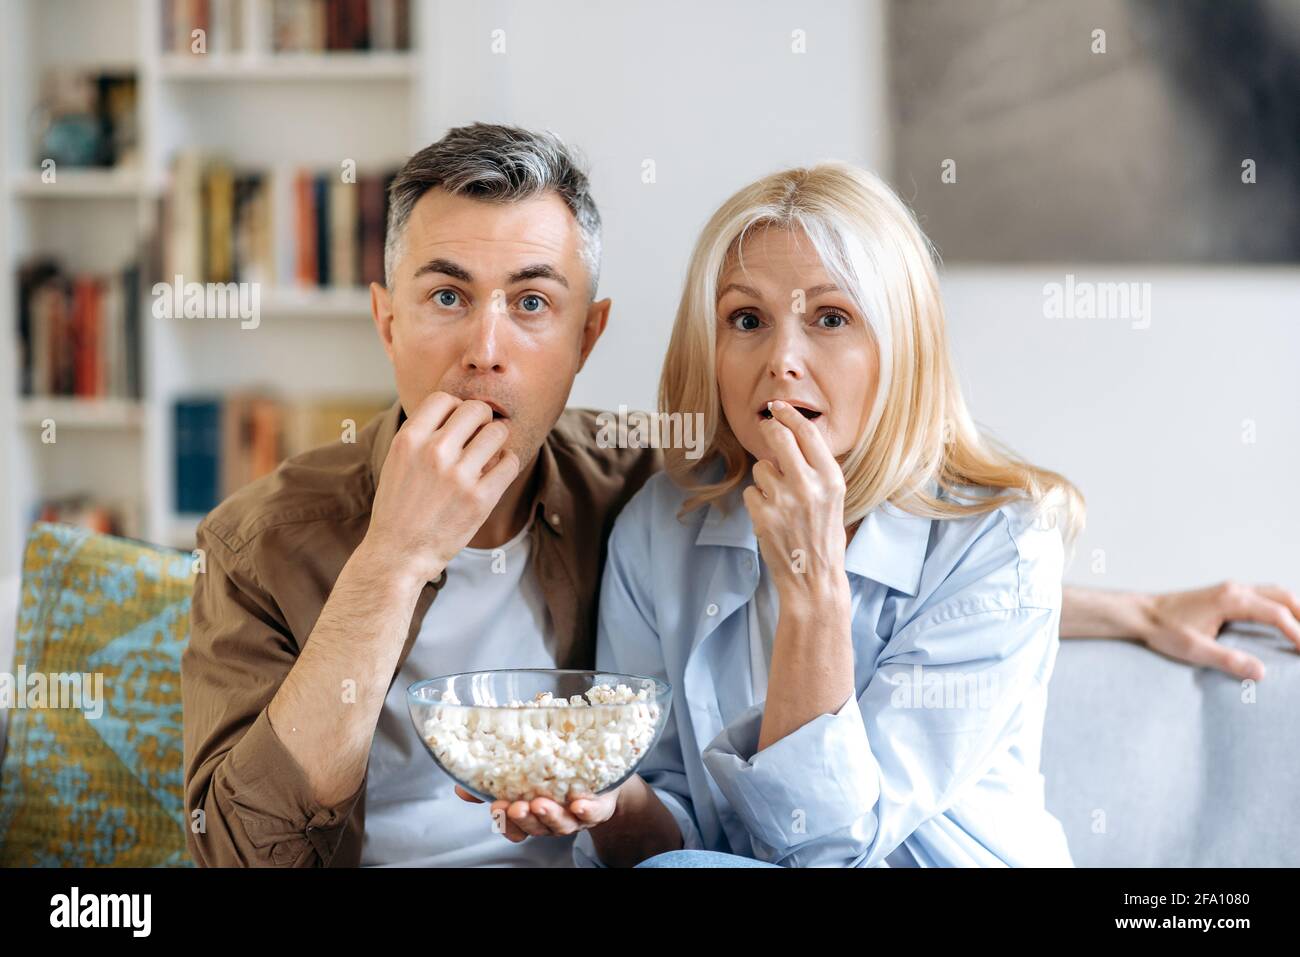 La coppia di famiglia caucasica di mezza età è rimasta scioccata e si siede a casa su un divano in abiti casual, guardando uno spettacolo televisivo o un film emozionante, mangiando popcorn, trascorrendo un fine settimana insieme a casa Foto Stock